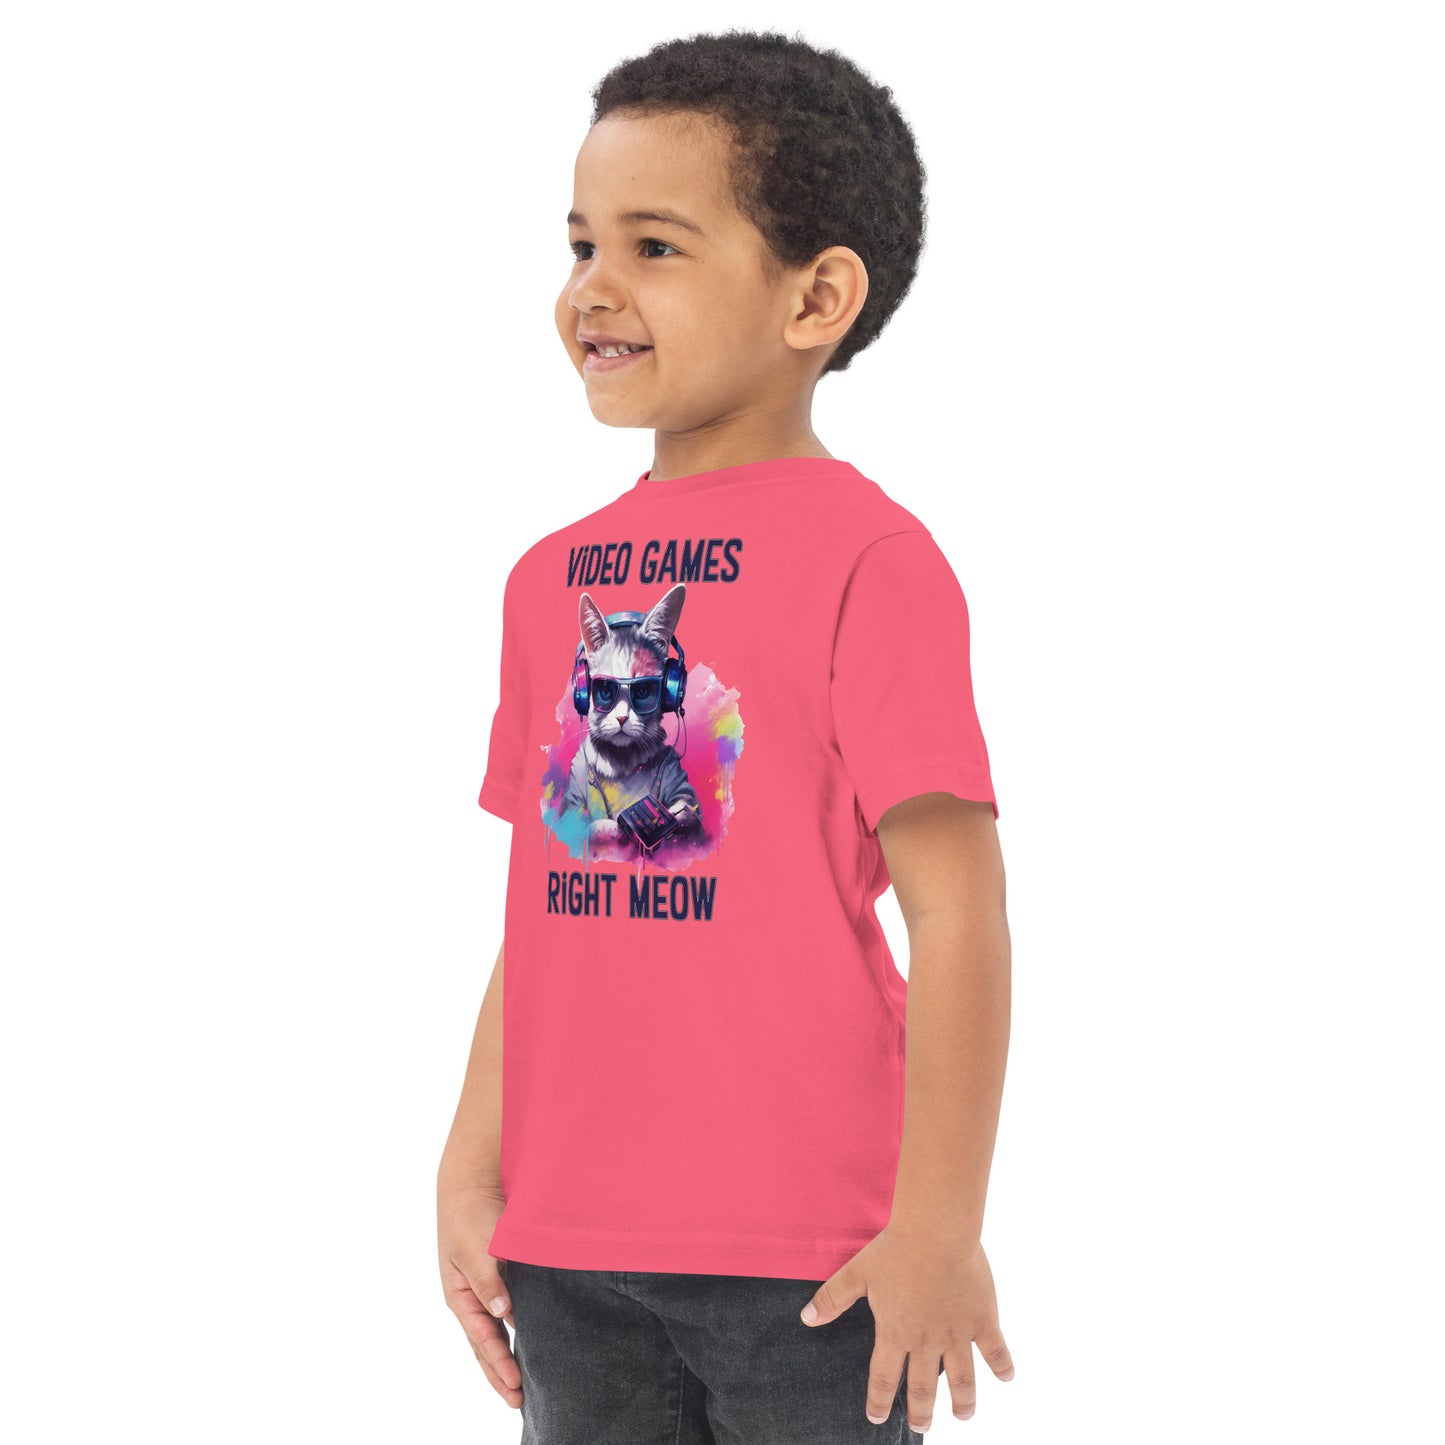 Toddler Gamer T-Shirt